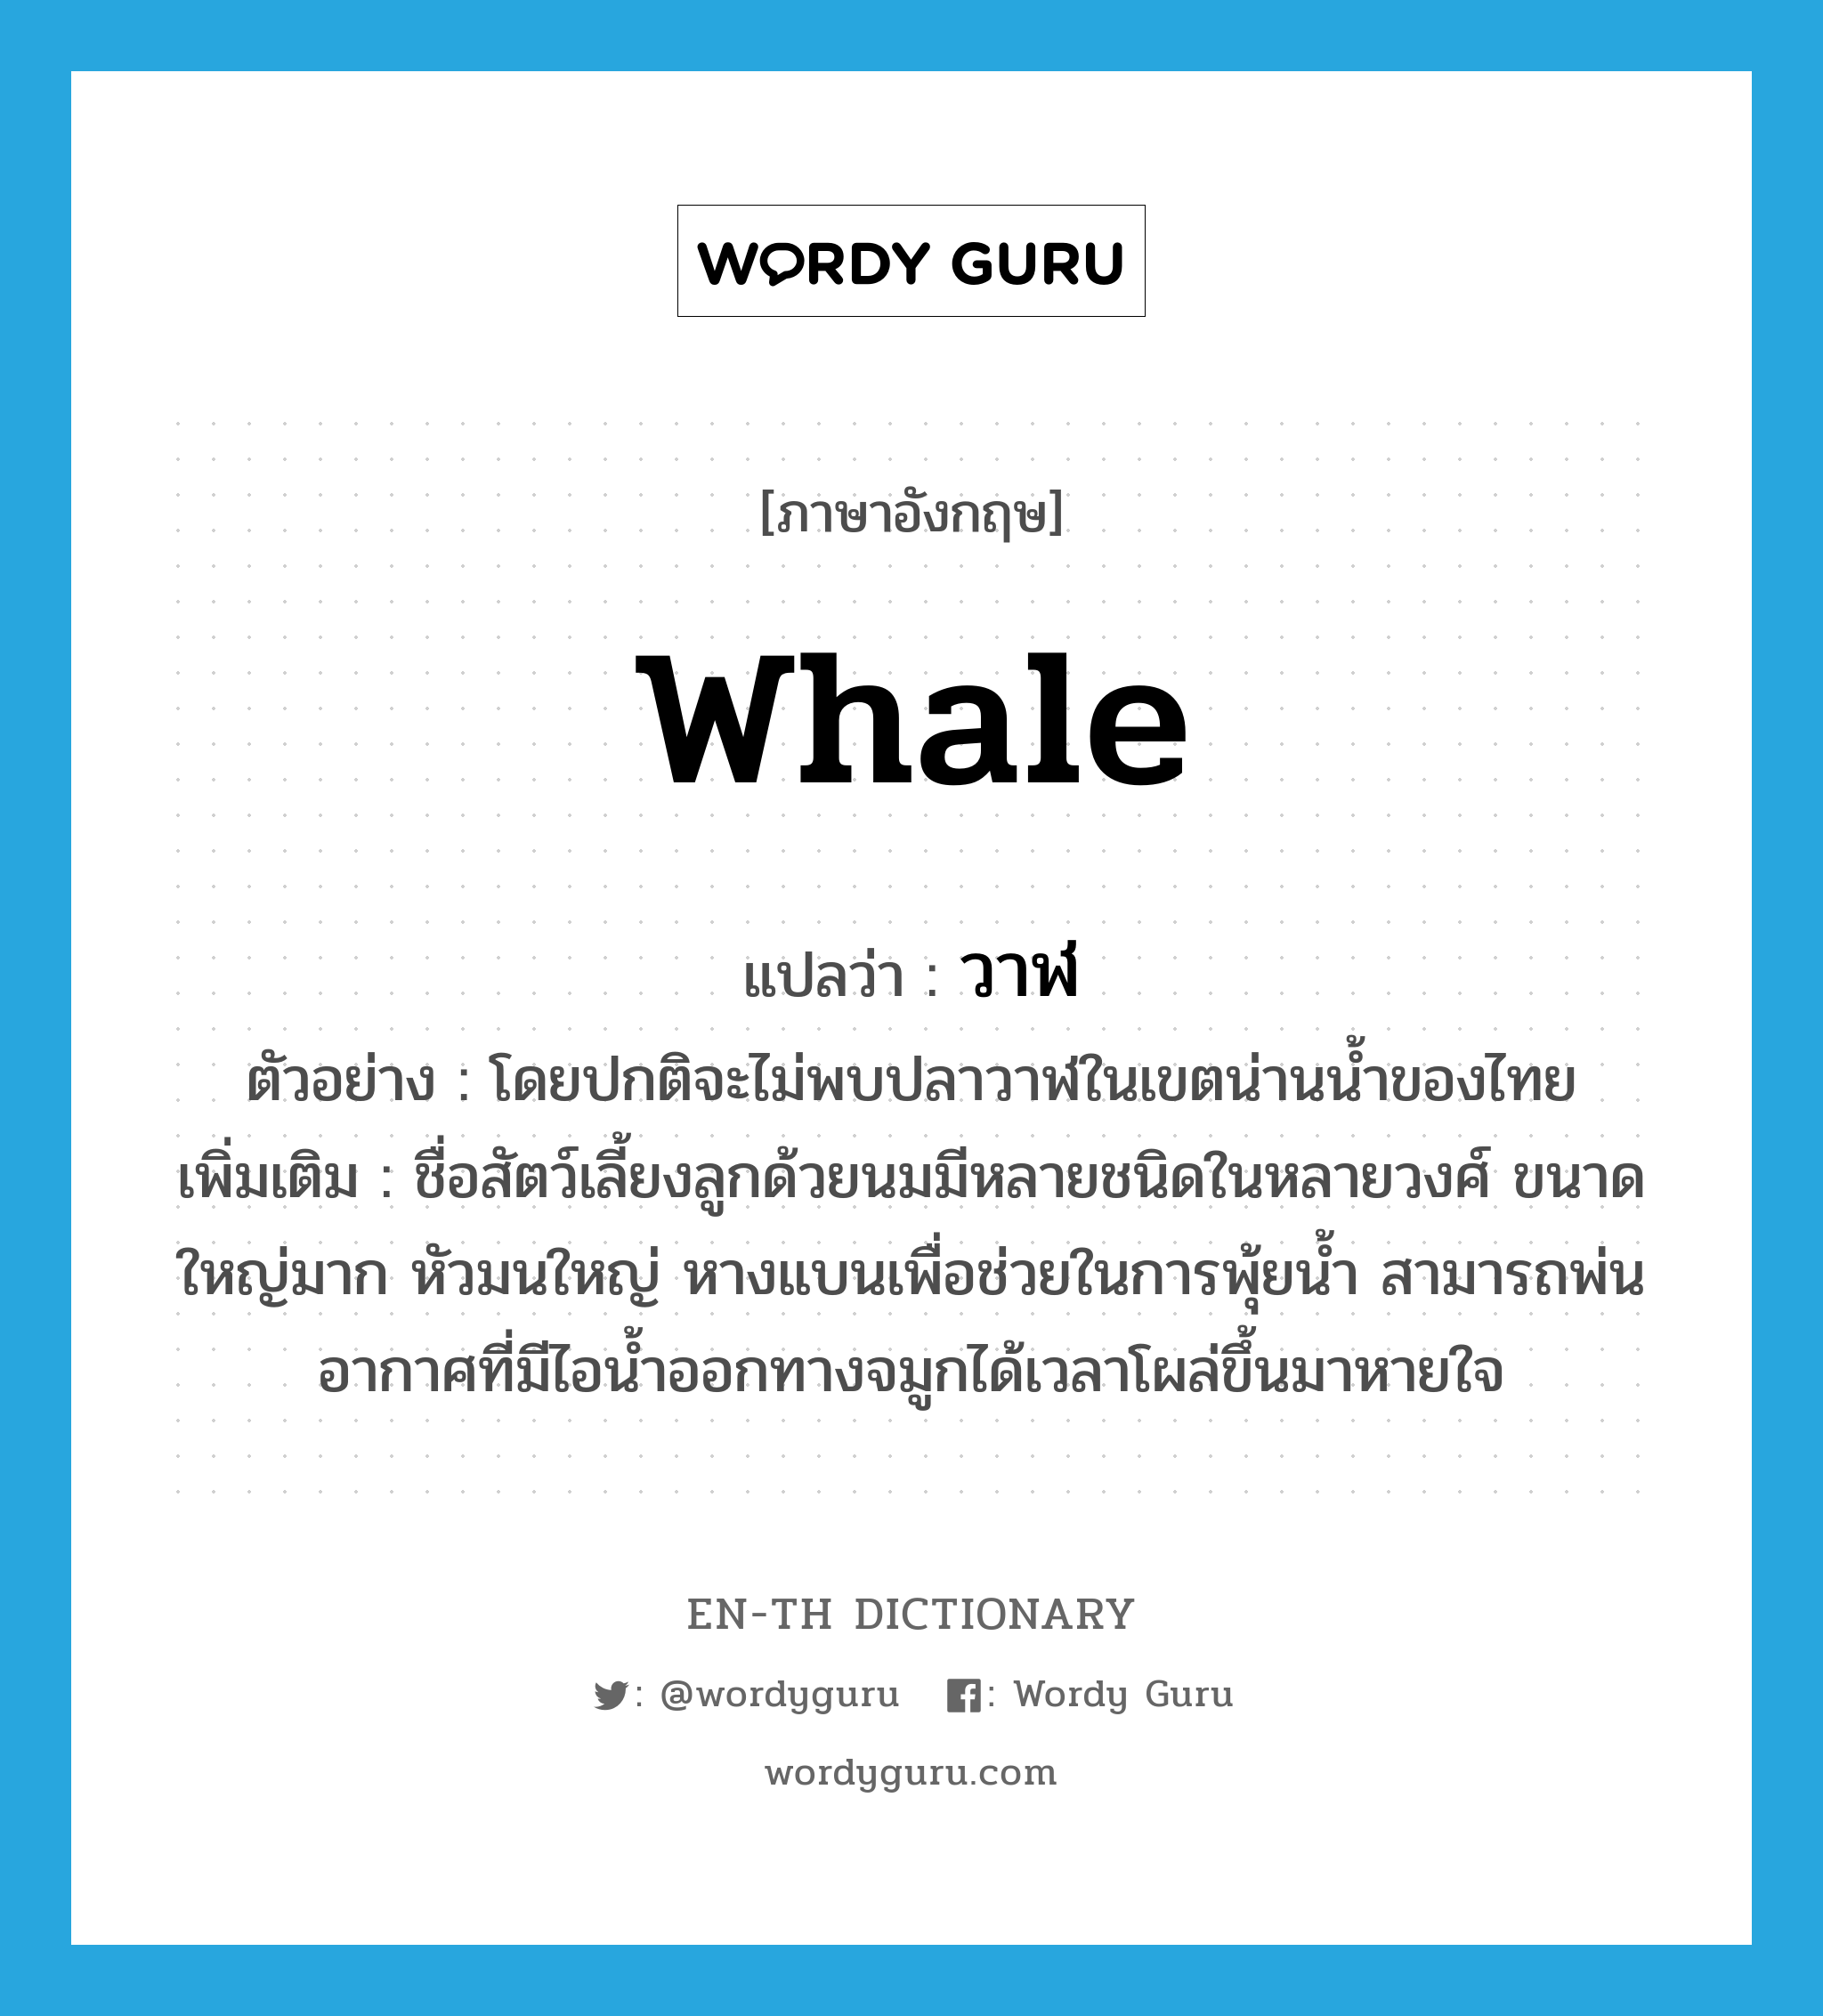 วาฬ ภาษาอังกฤษ?, คำศัพท์ภาษาอังกฤษ วาฬ แปลว่า whale ประเภท N ตัวอย่าง โดยปกติจะไม่พบปลาวาฬในเขตน่านน้ำของไทย เพิ่มเติม ชื่อสัตว์เลี้ยงลูกด้วยนมมีหลายชนิดในหลายวงศ์ ขนาดใหญ่มาก หัวมนใหญ่ หางแบนเพื่อช่วยในการพุ้ยน้ำ สามารถพ่นอากาศที่มีไอน้ำออกทางจมูกได้เวลาโผล่ขึ้นมาหายใจ หมวด N